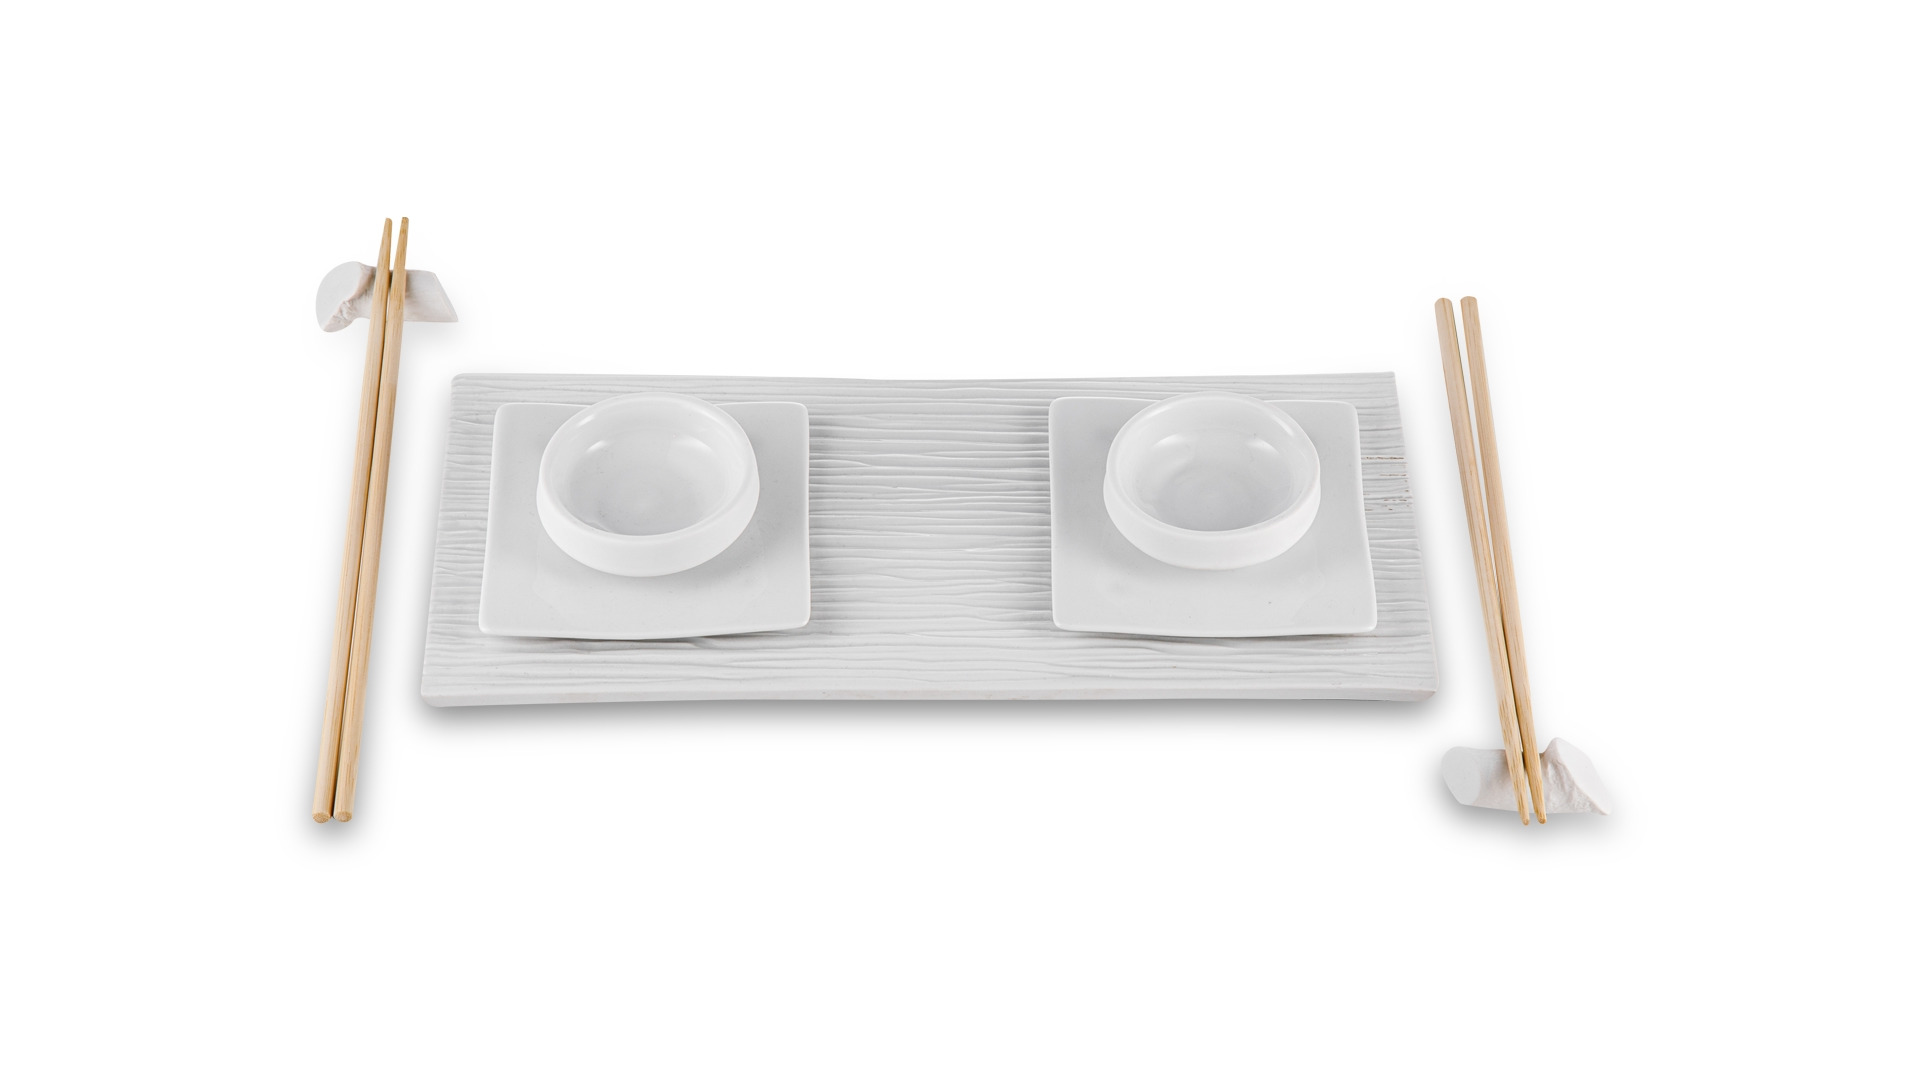 Набор для суши Cmielow Sushi Zen 7 предметов, фарфор твердый, белый